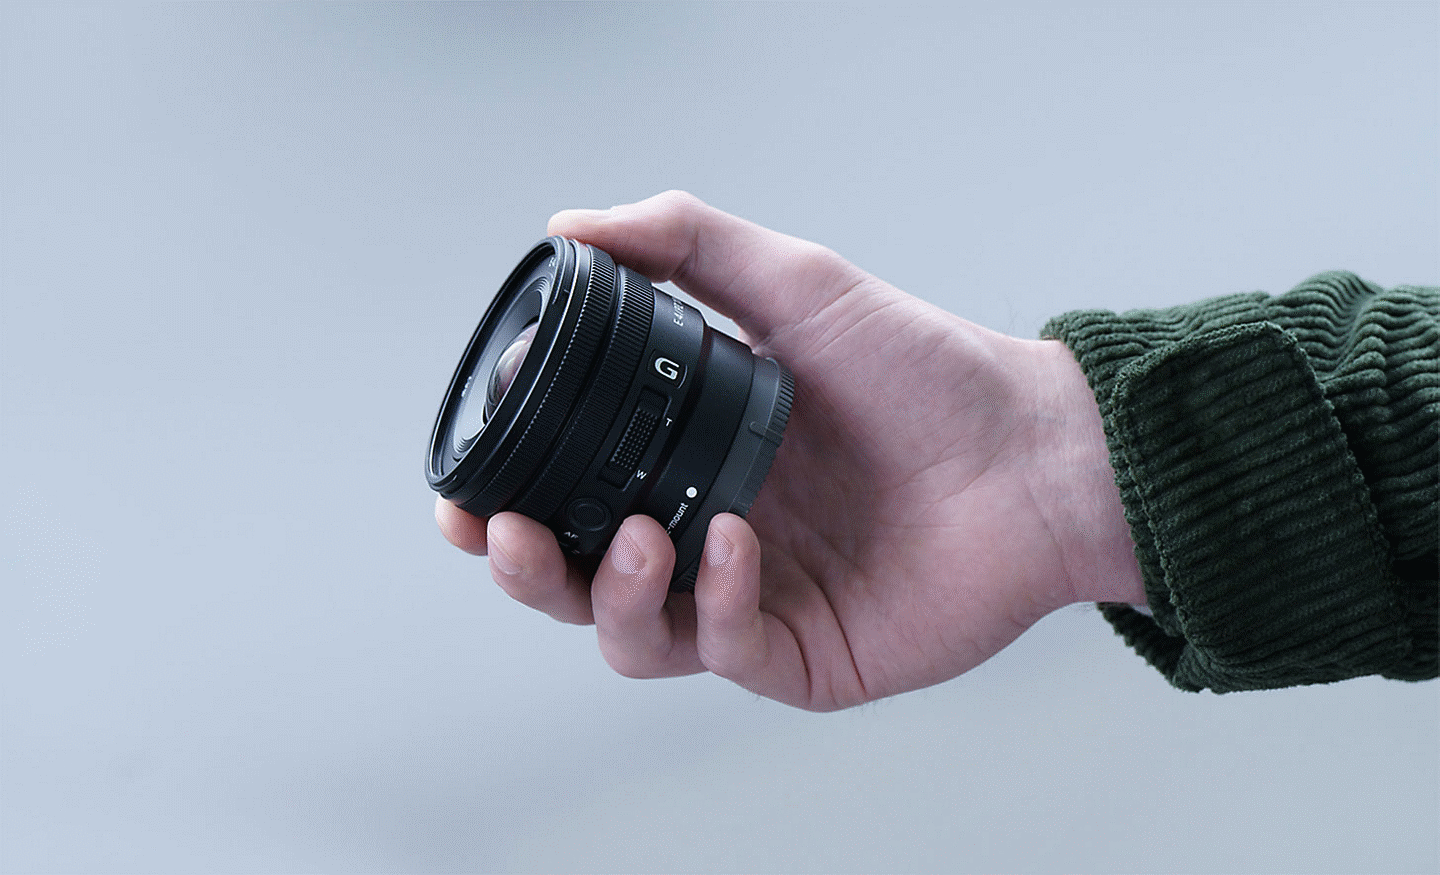 Image de la main d'une personne tenant le E PZ 10-20 mm F4 G, montrant que l'objectif est assez petit pour tenir dans la main